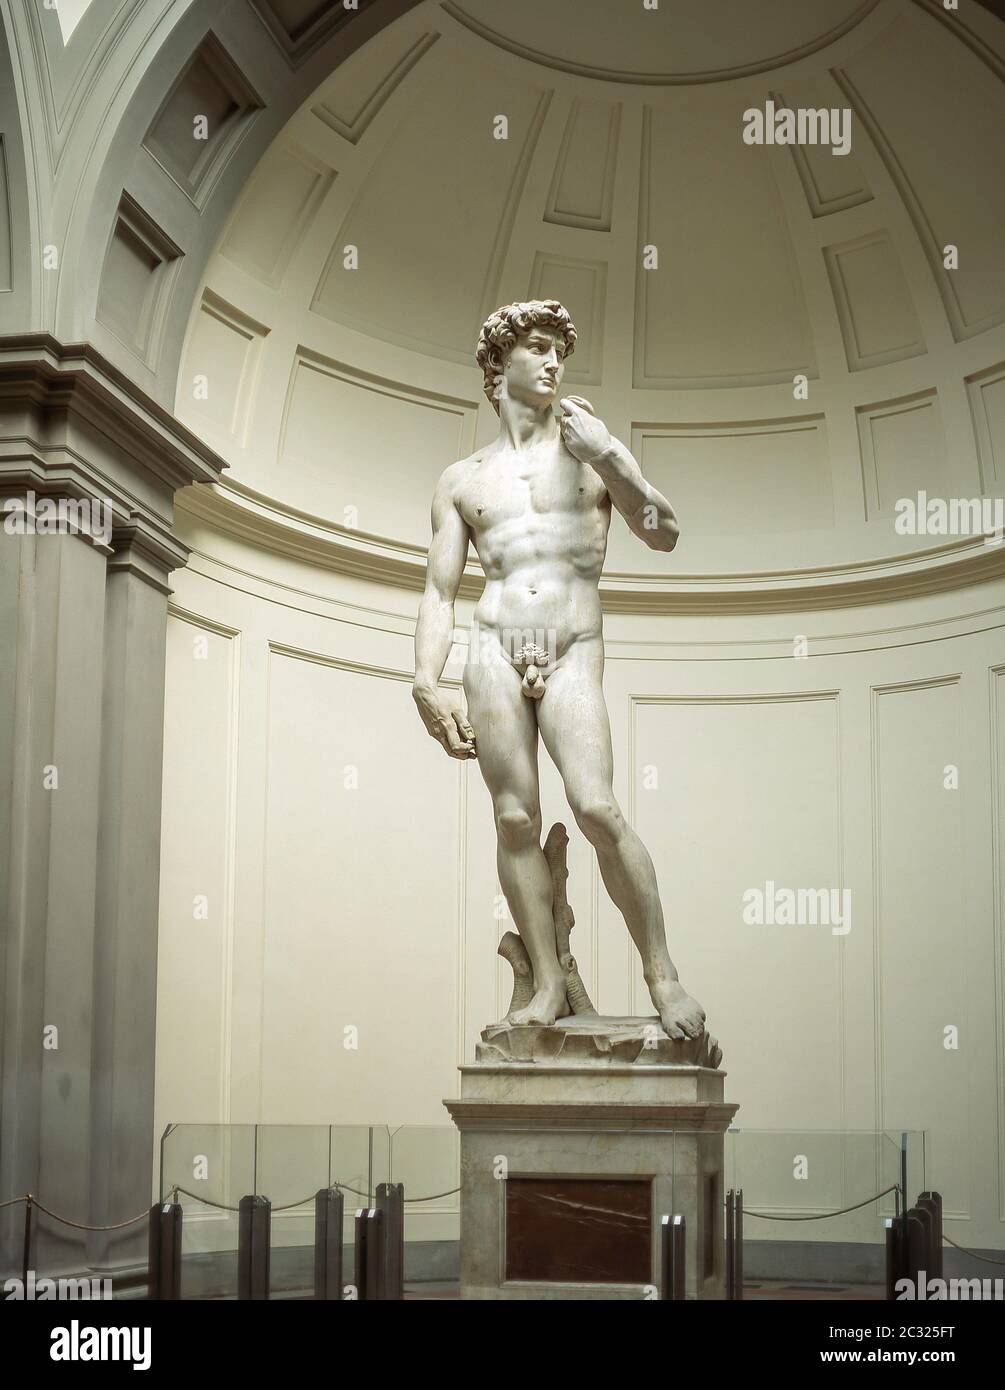 La 'Statue of David' di Michelangelo, Accademia di Belle Arti, Firenze (Firenze), Regione Toscana, Italia Foto Stock